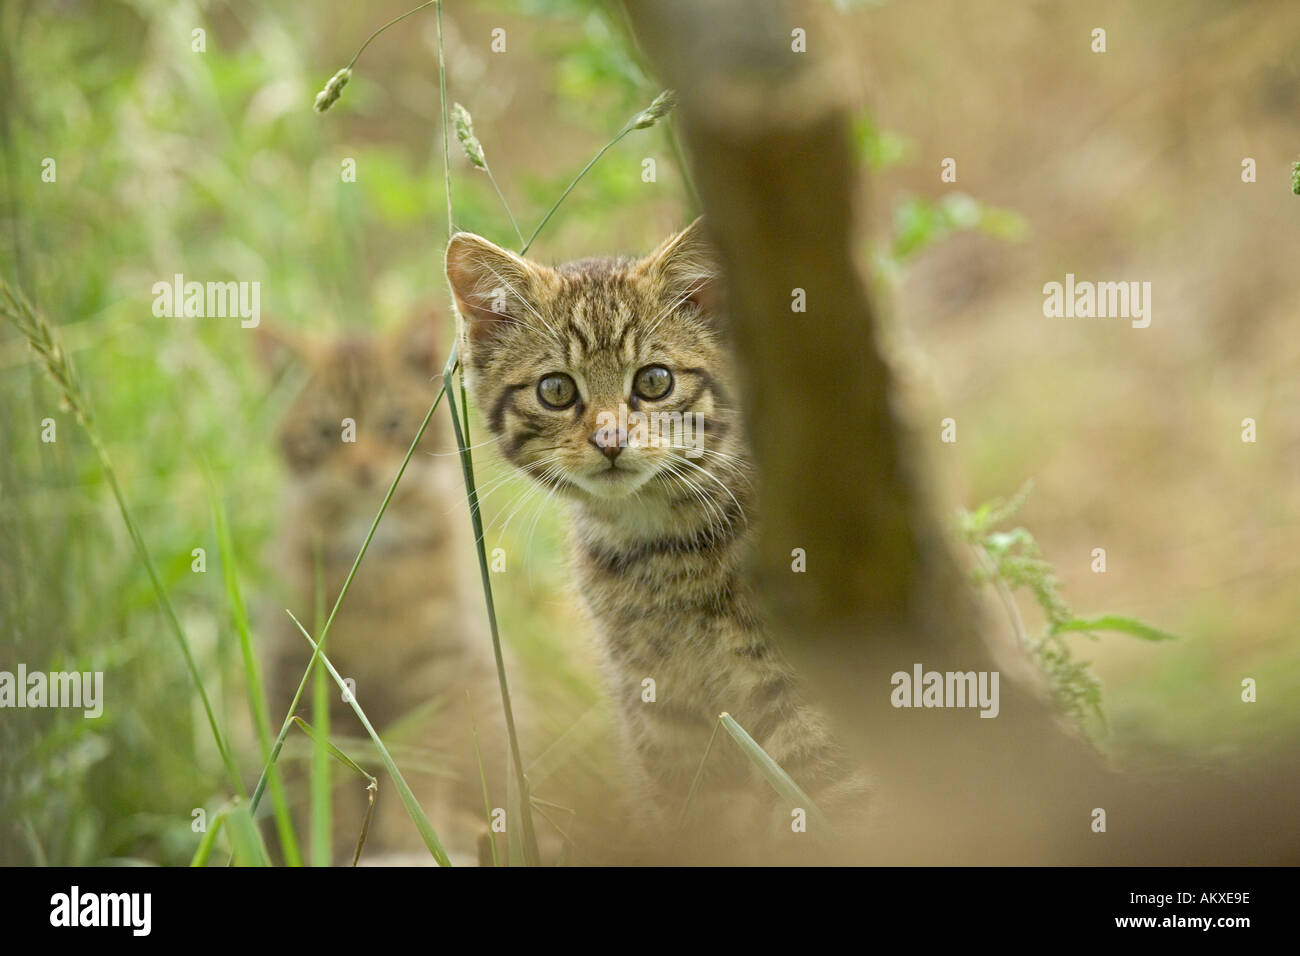 Scottish Wildcat kitten Felis silvestris Stock Photo